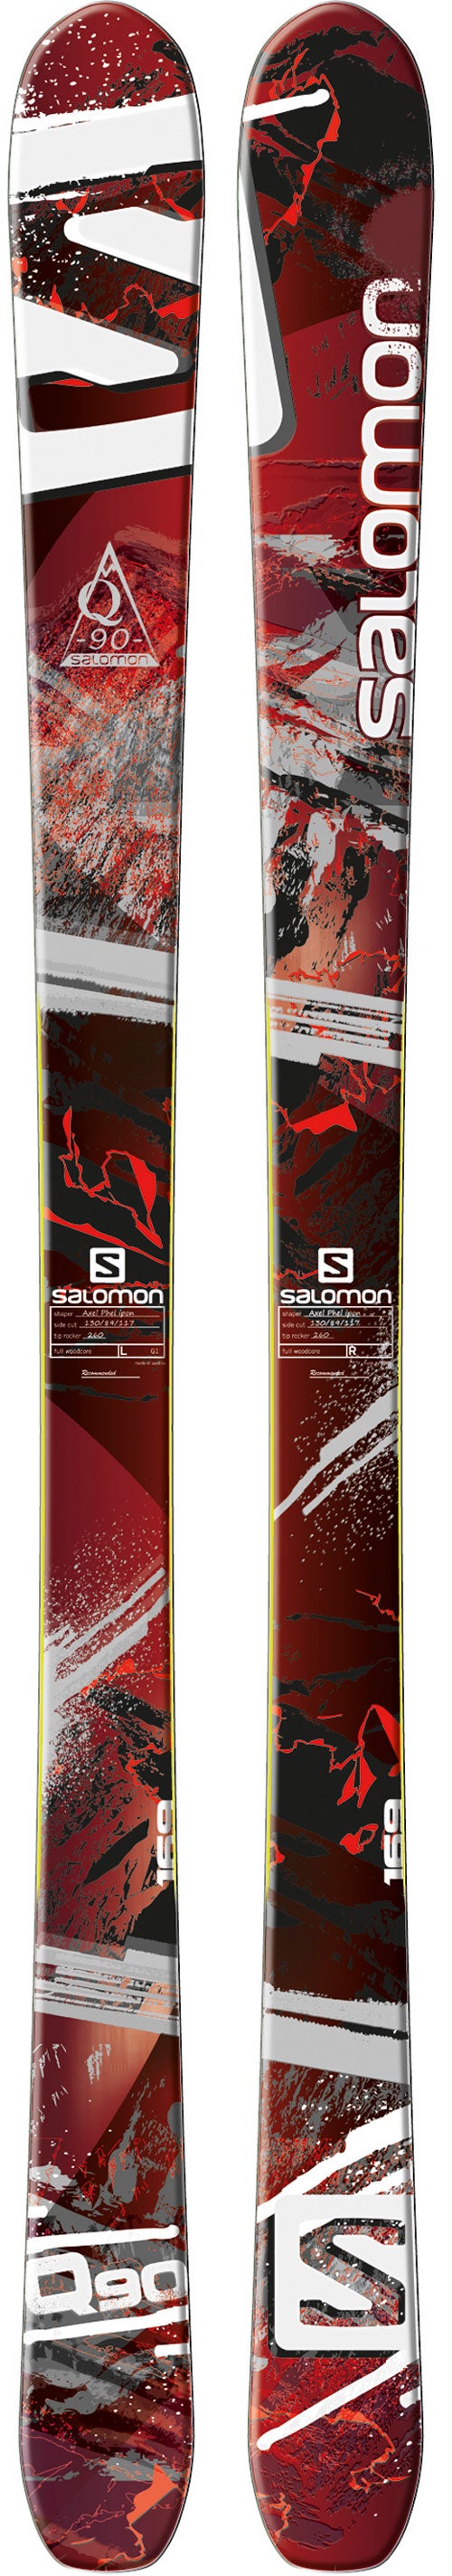 Salomon サロモン Q-90 185cm 2014ソールサイズは317mmです